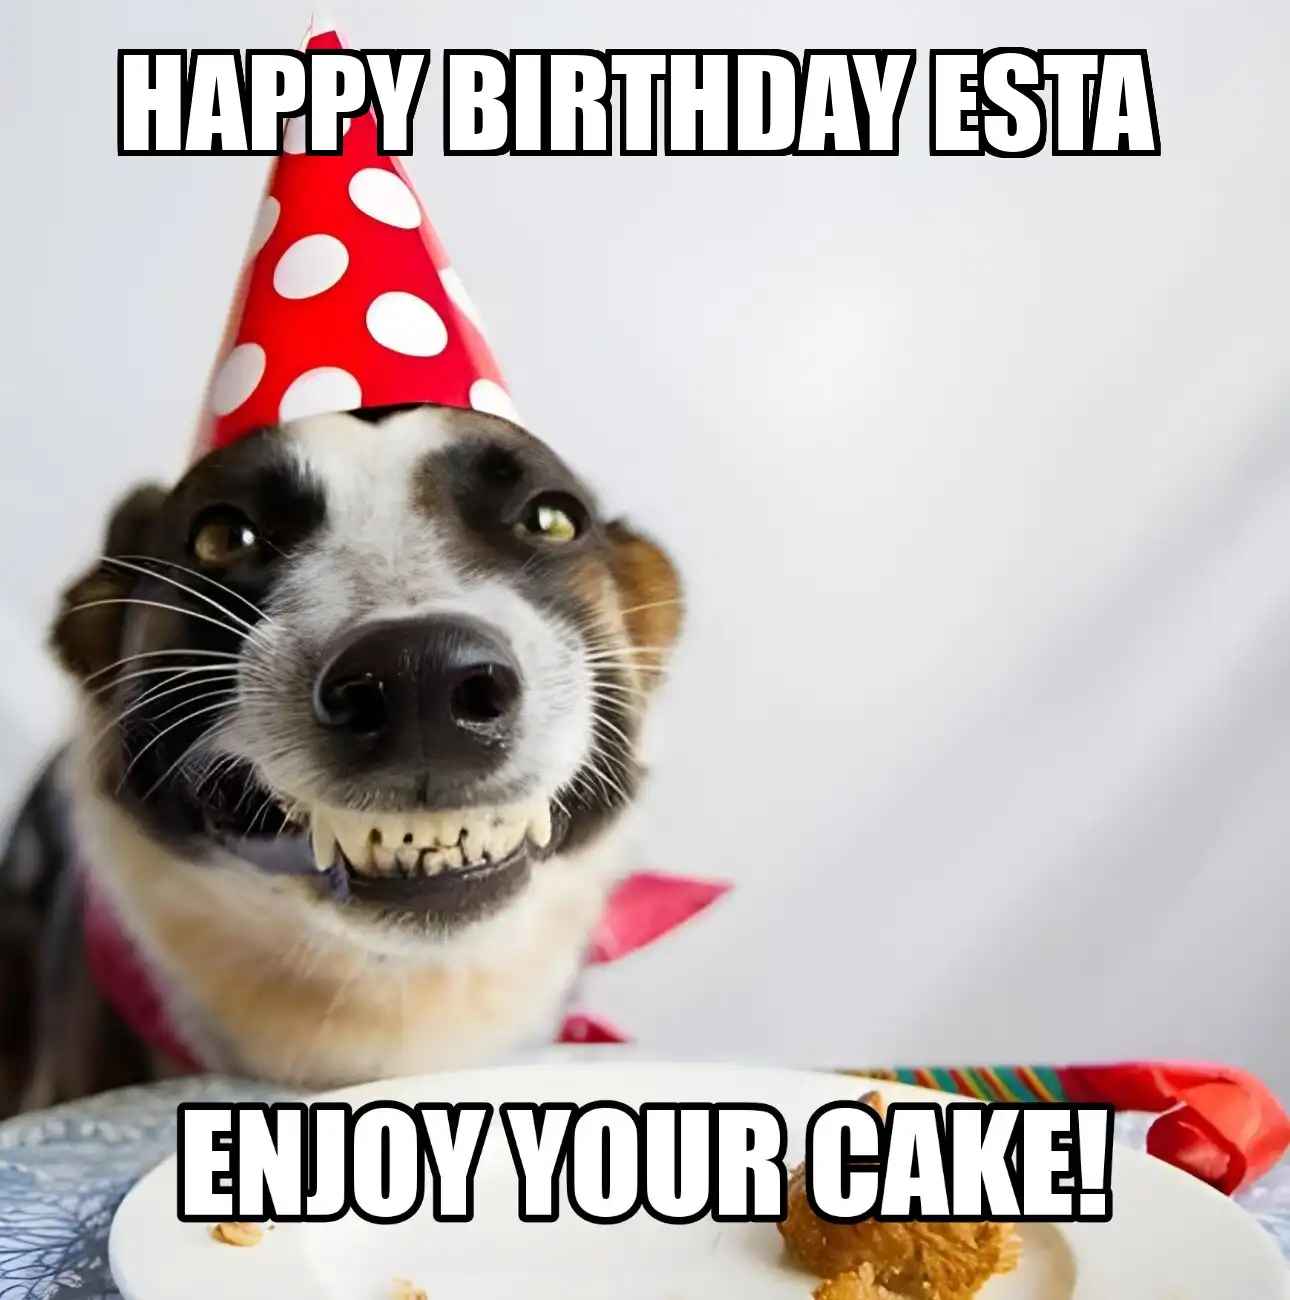 Happy Birthday Esta Enjoy Your Cake Dog Meme